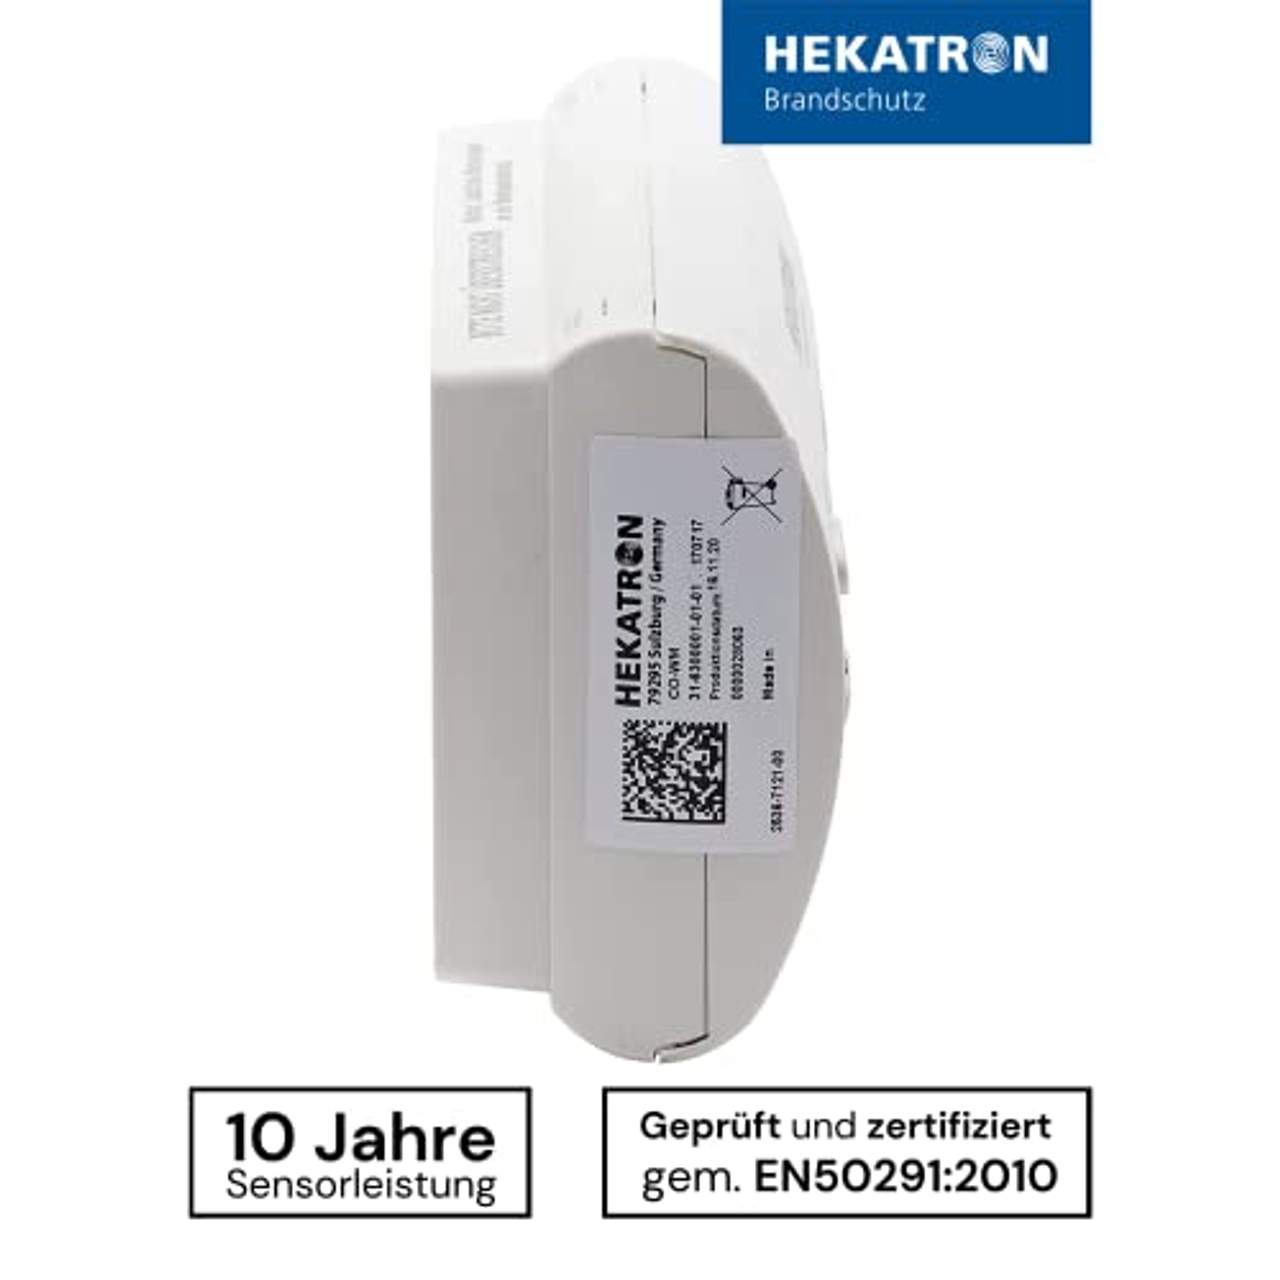 Hekatron 31-6300001-01-XX CO Melder mit Batterie & Co Sensor mit bis zu 10 Jahren Leistung